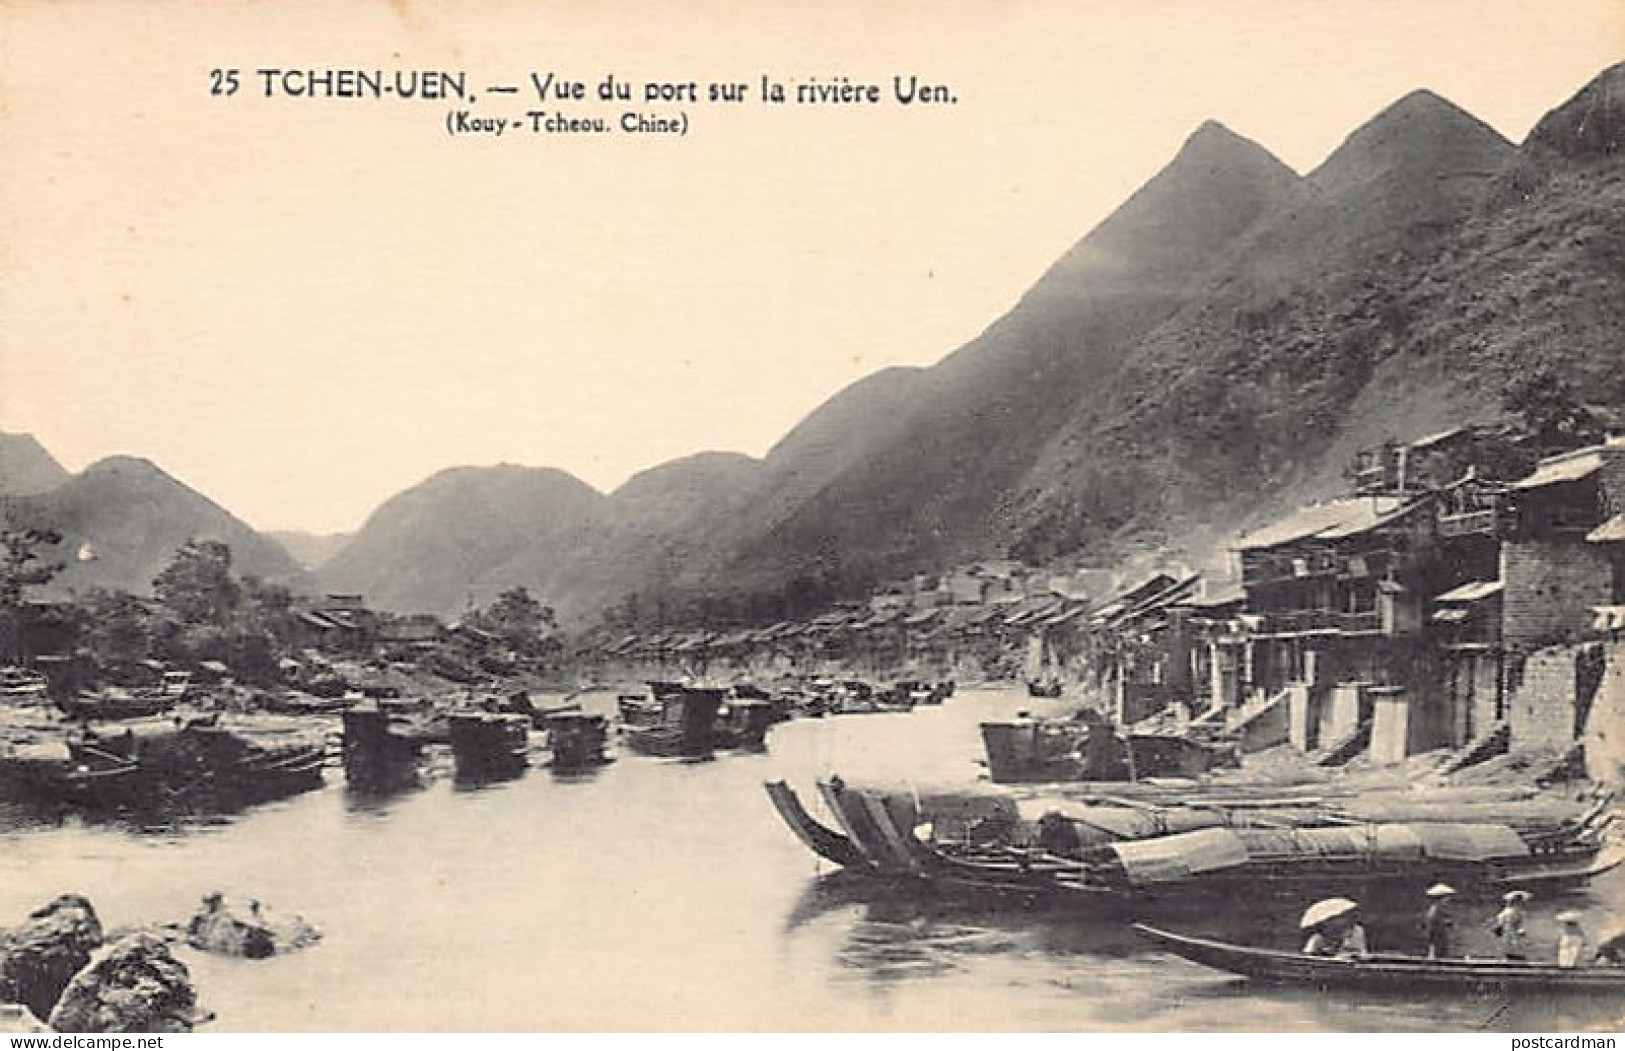 China - TCHEN UEN Guizhou Province - View Of The Harbor On The Uen River - Publ. Missions étrangères De Paris, France 25 - Chine